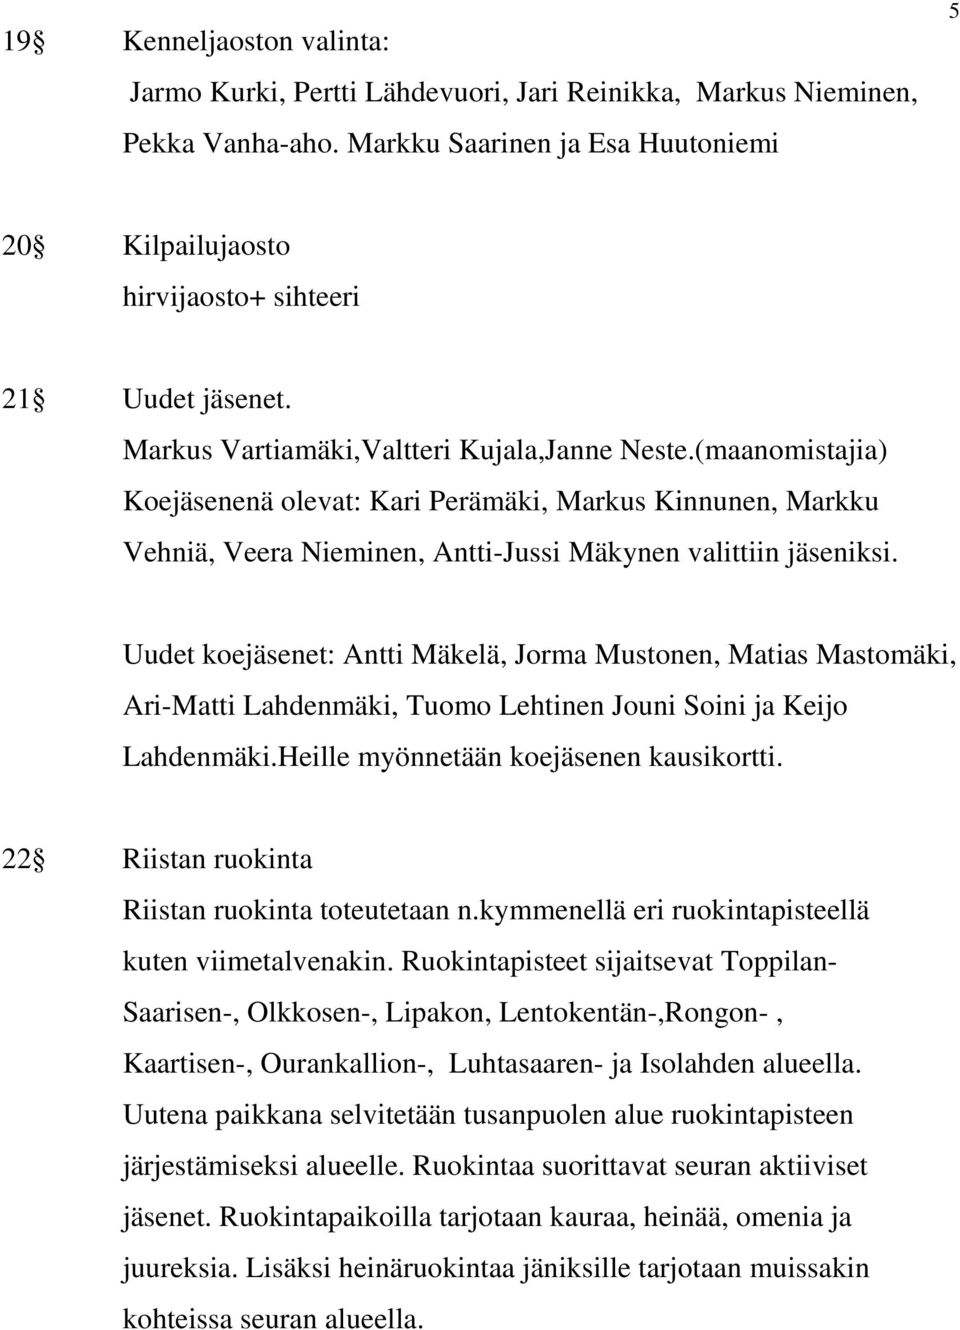 Uudet koejäsenet: Antti Mäkelä, Jorma Mustonen, Matias Mastomäki, Ari-Matti Lahdenmäki, Tuomo Lehtinen Jouni Soini ja Keijo Lahdenmäki.Heille myönnetään koejäsenen kausikortti.